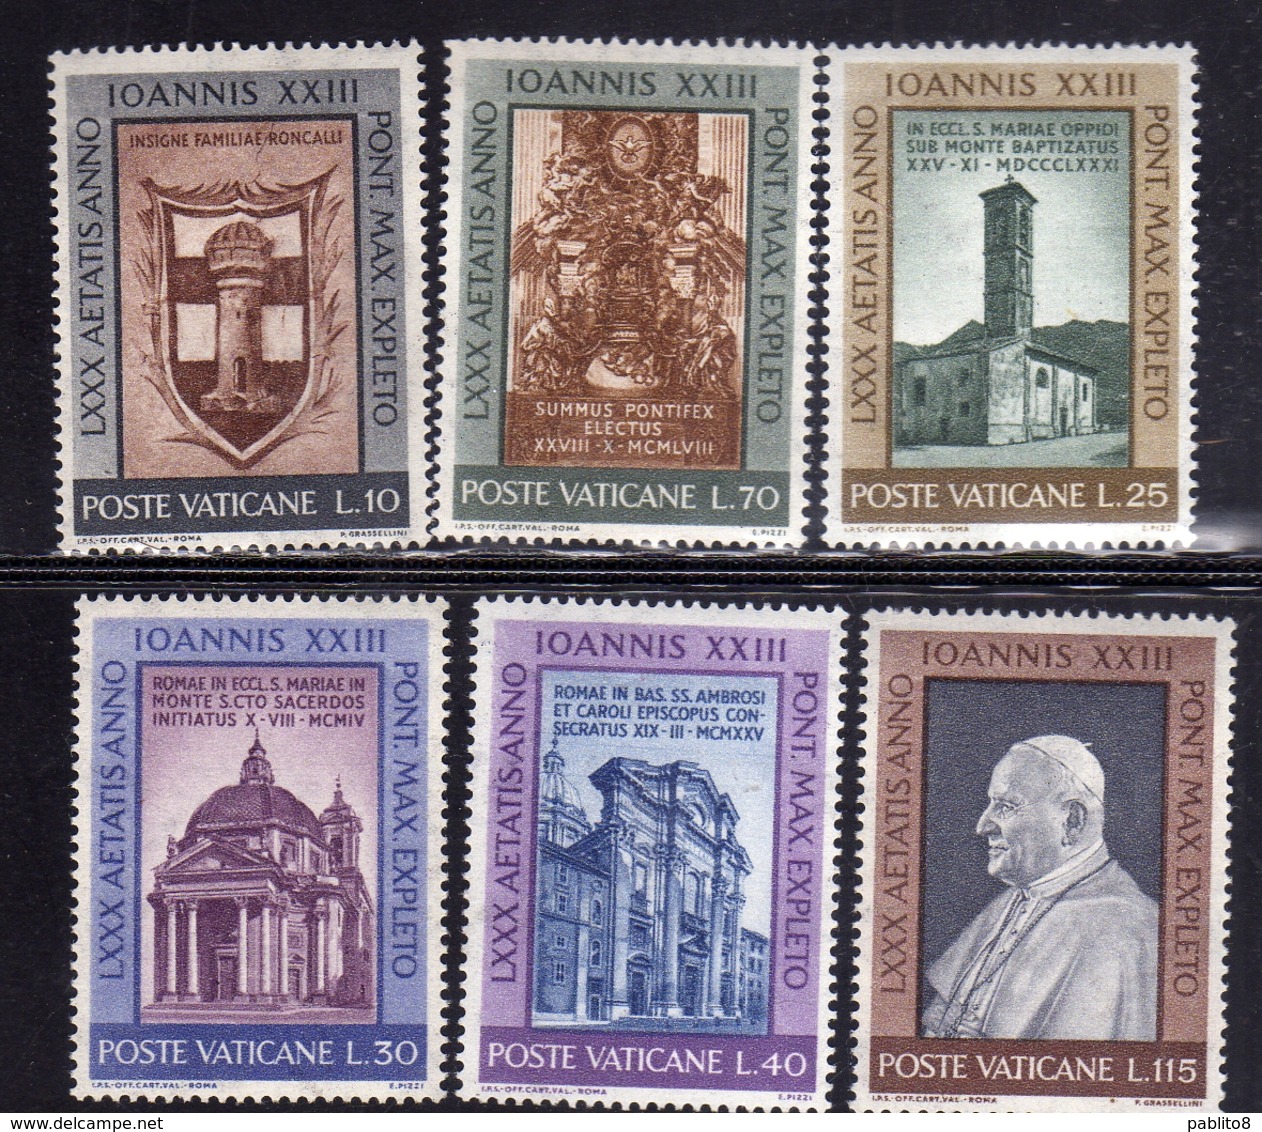 CITTÀ DEL VATICANO VATIKAN VATICAN 1961 GENETLIACO COMPLEANNO BIRTHDAY DEL PAPA POPE SERIE COMPLETA COMPLETE SET MNH - Unused Stamps